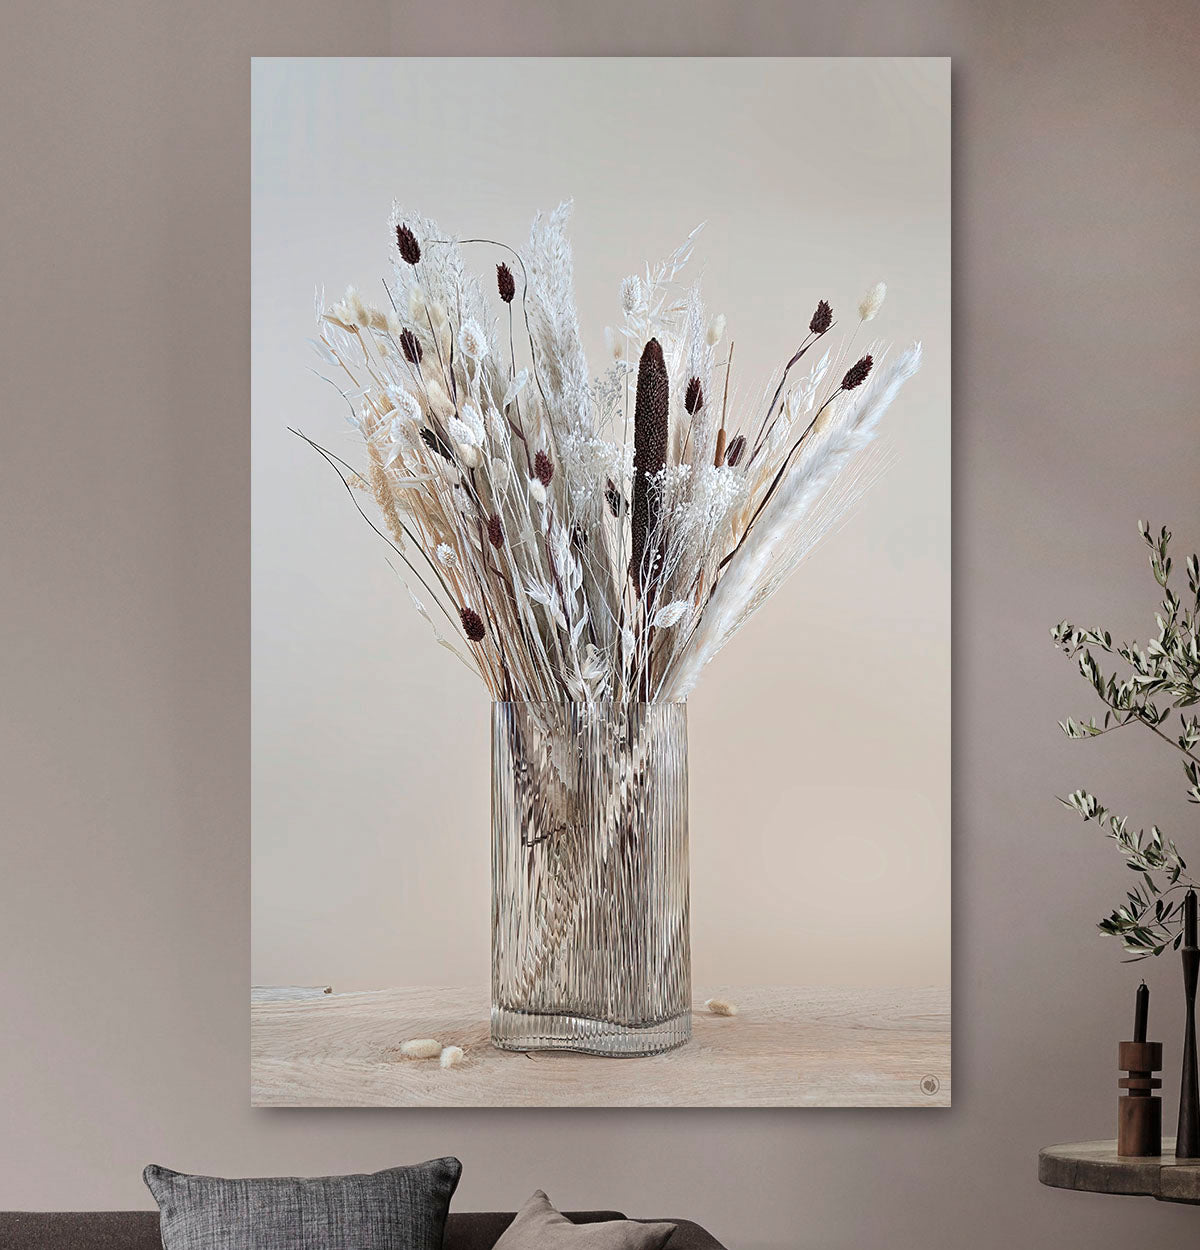 Schilderij met droogbloemen in glazen ribbel vaas tegen een lichte muur